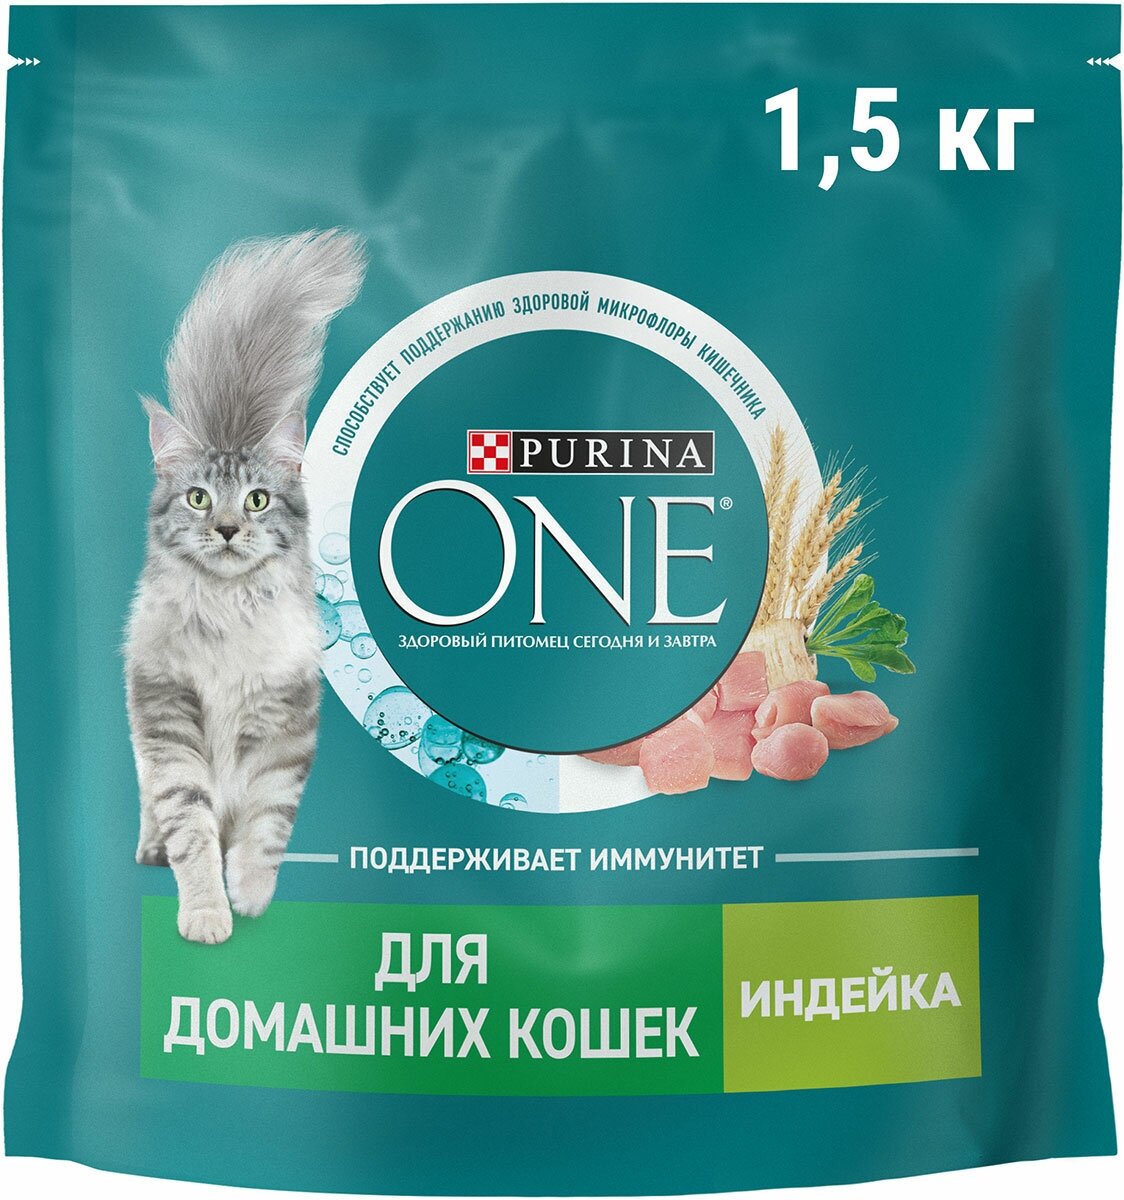 Purina One Сухой корм для домашних кошек с индейкой и злаками, 1,5 кг - фото №3